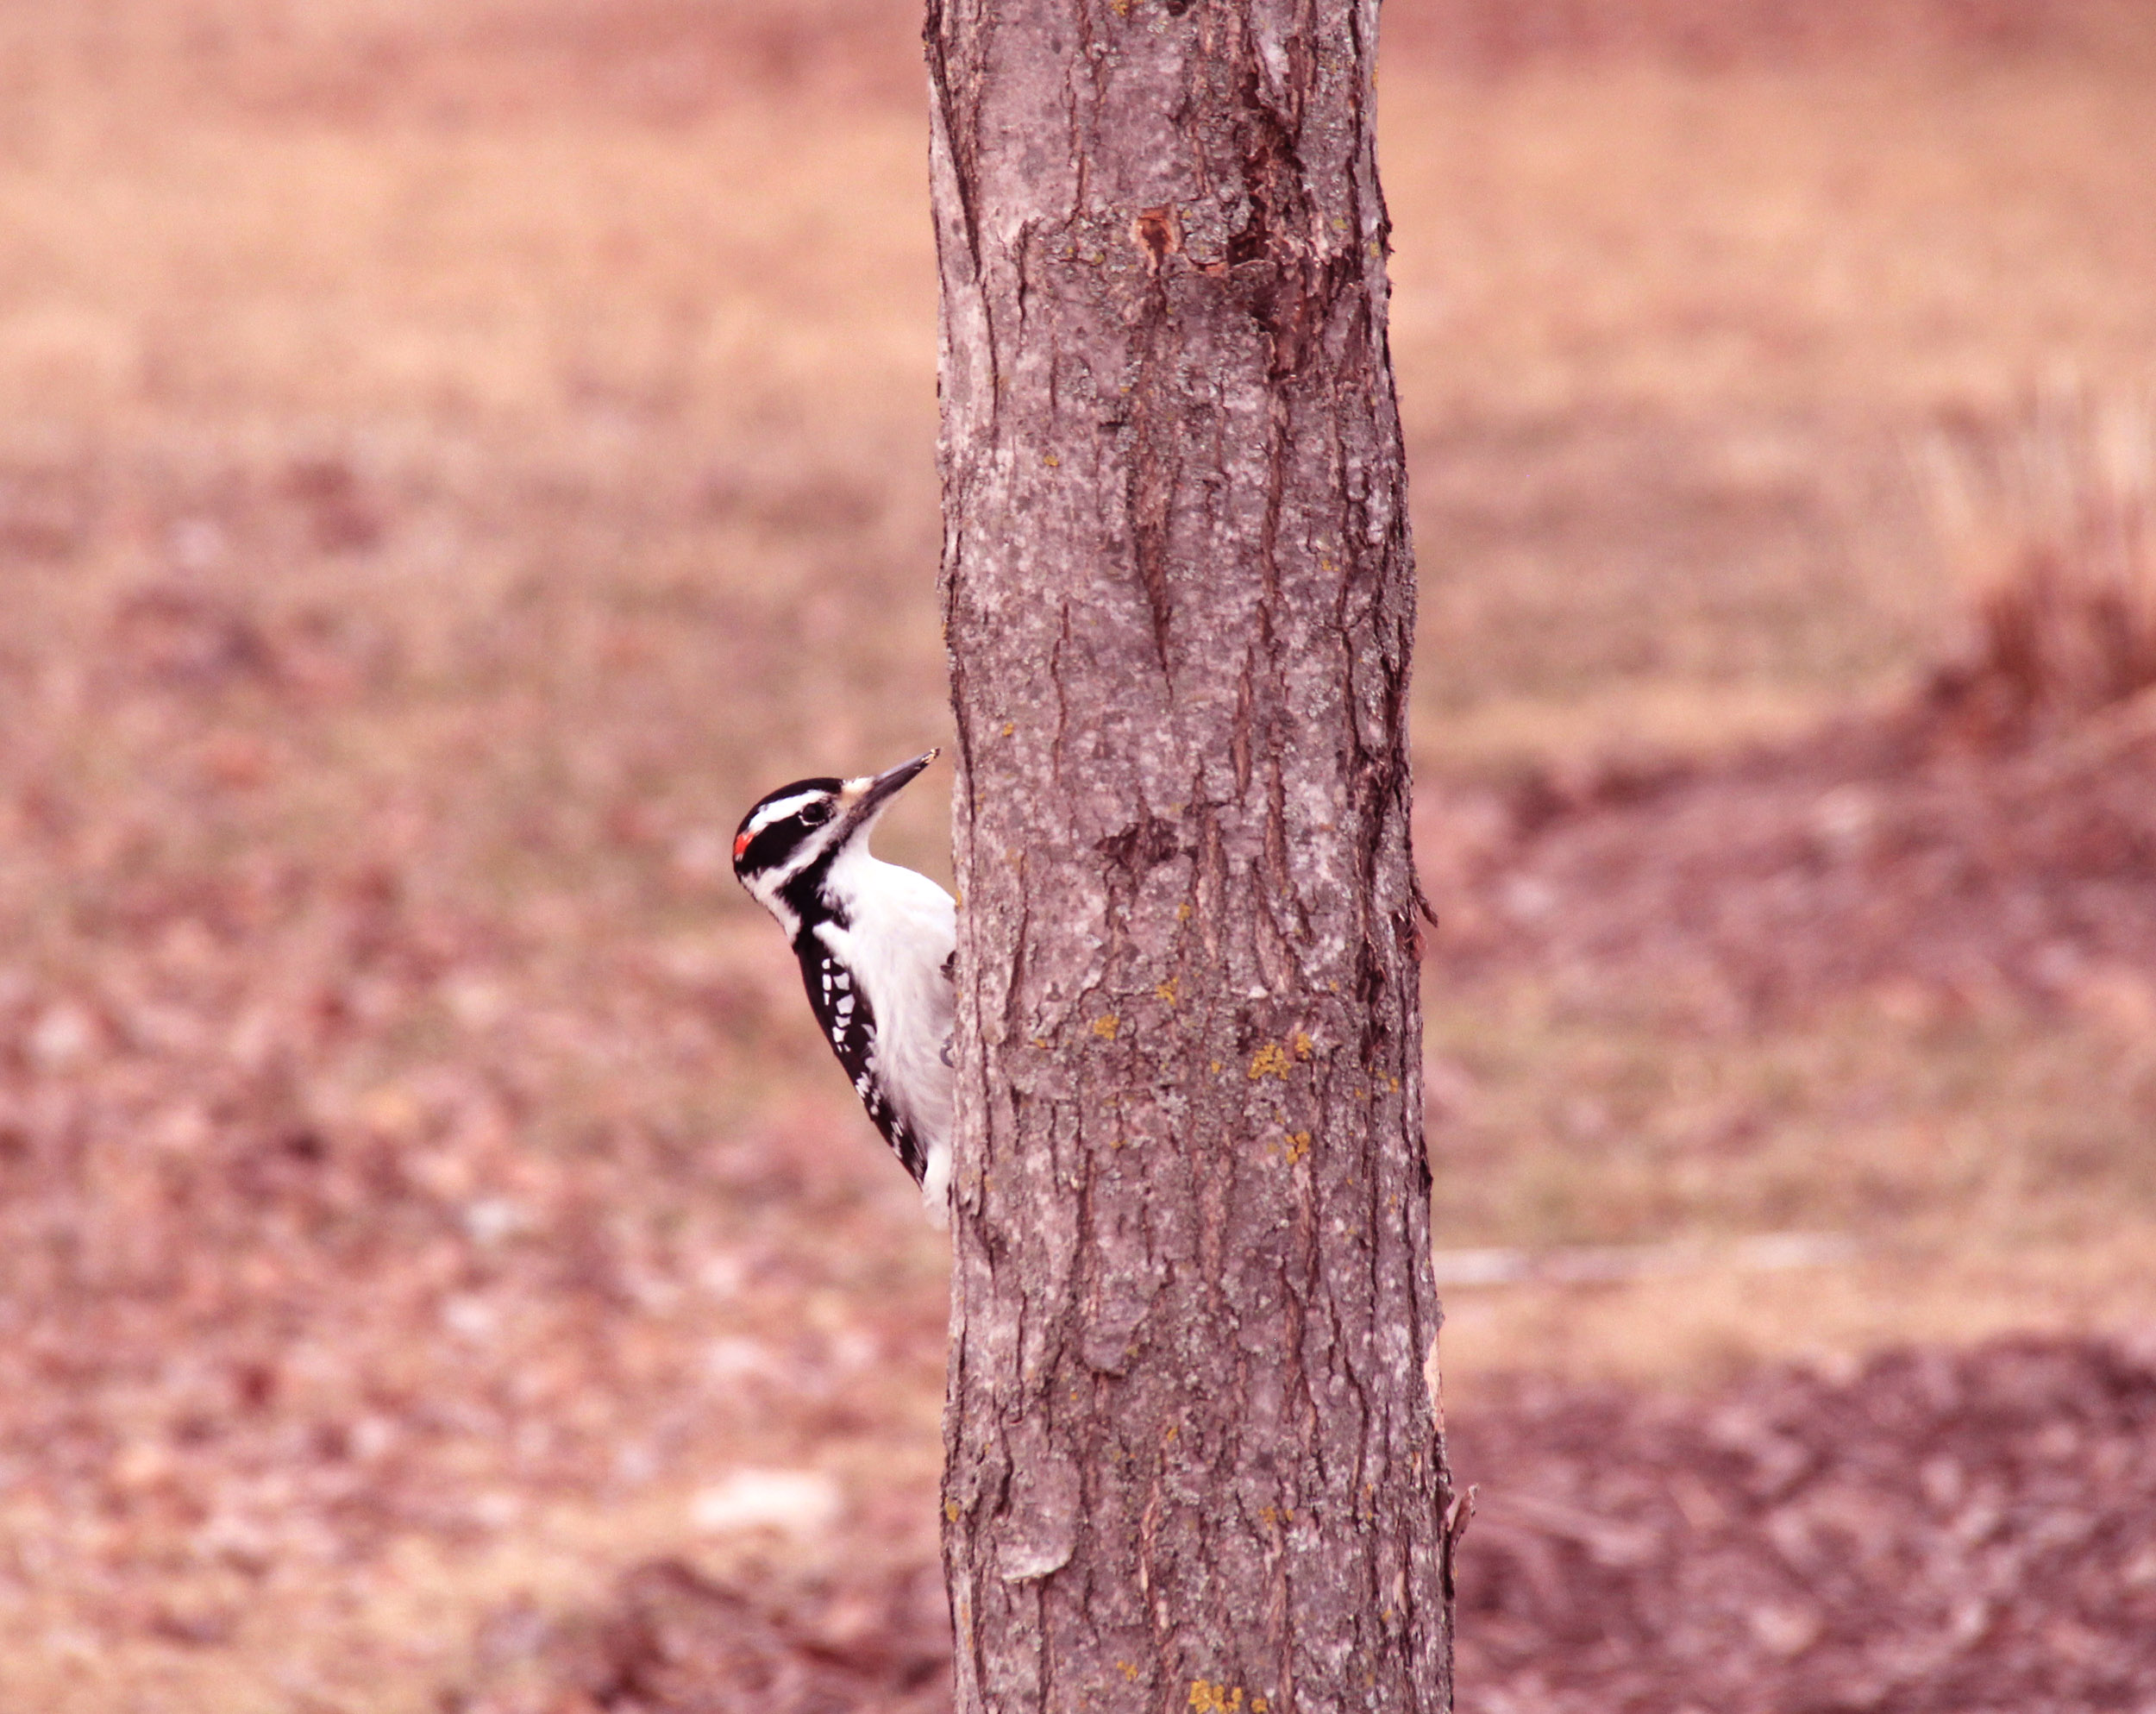 Woodpecker.jpg